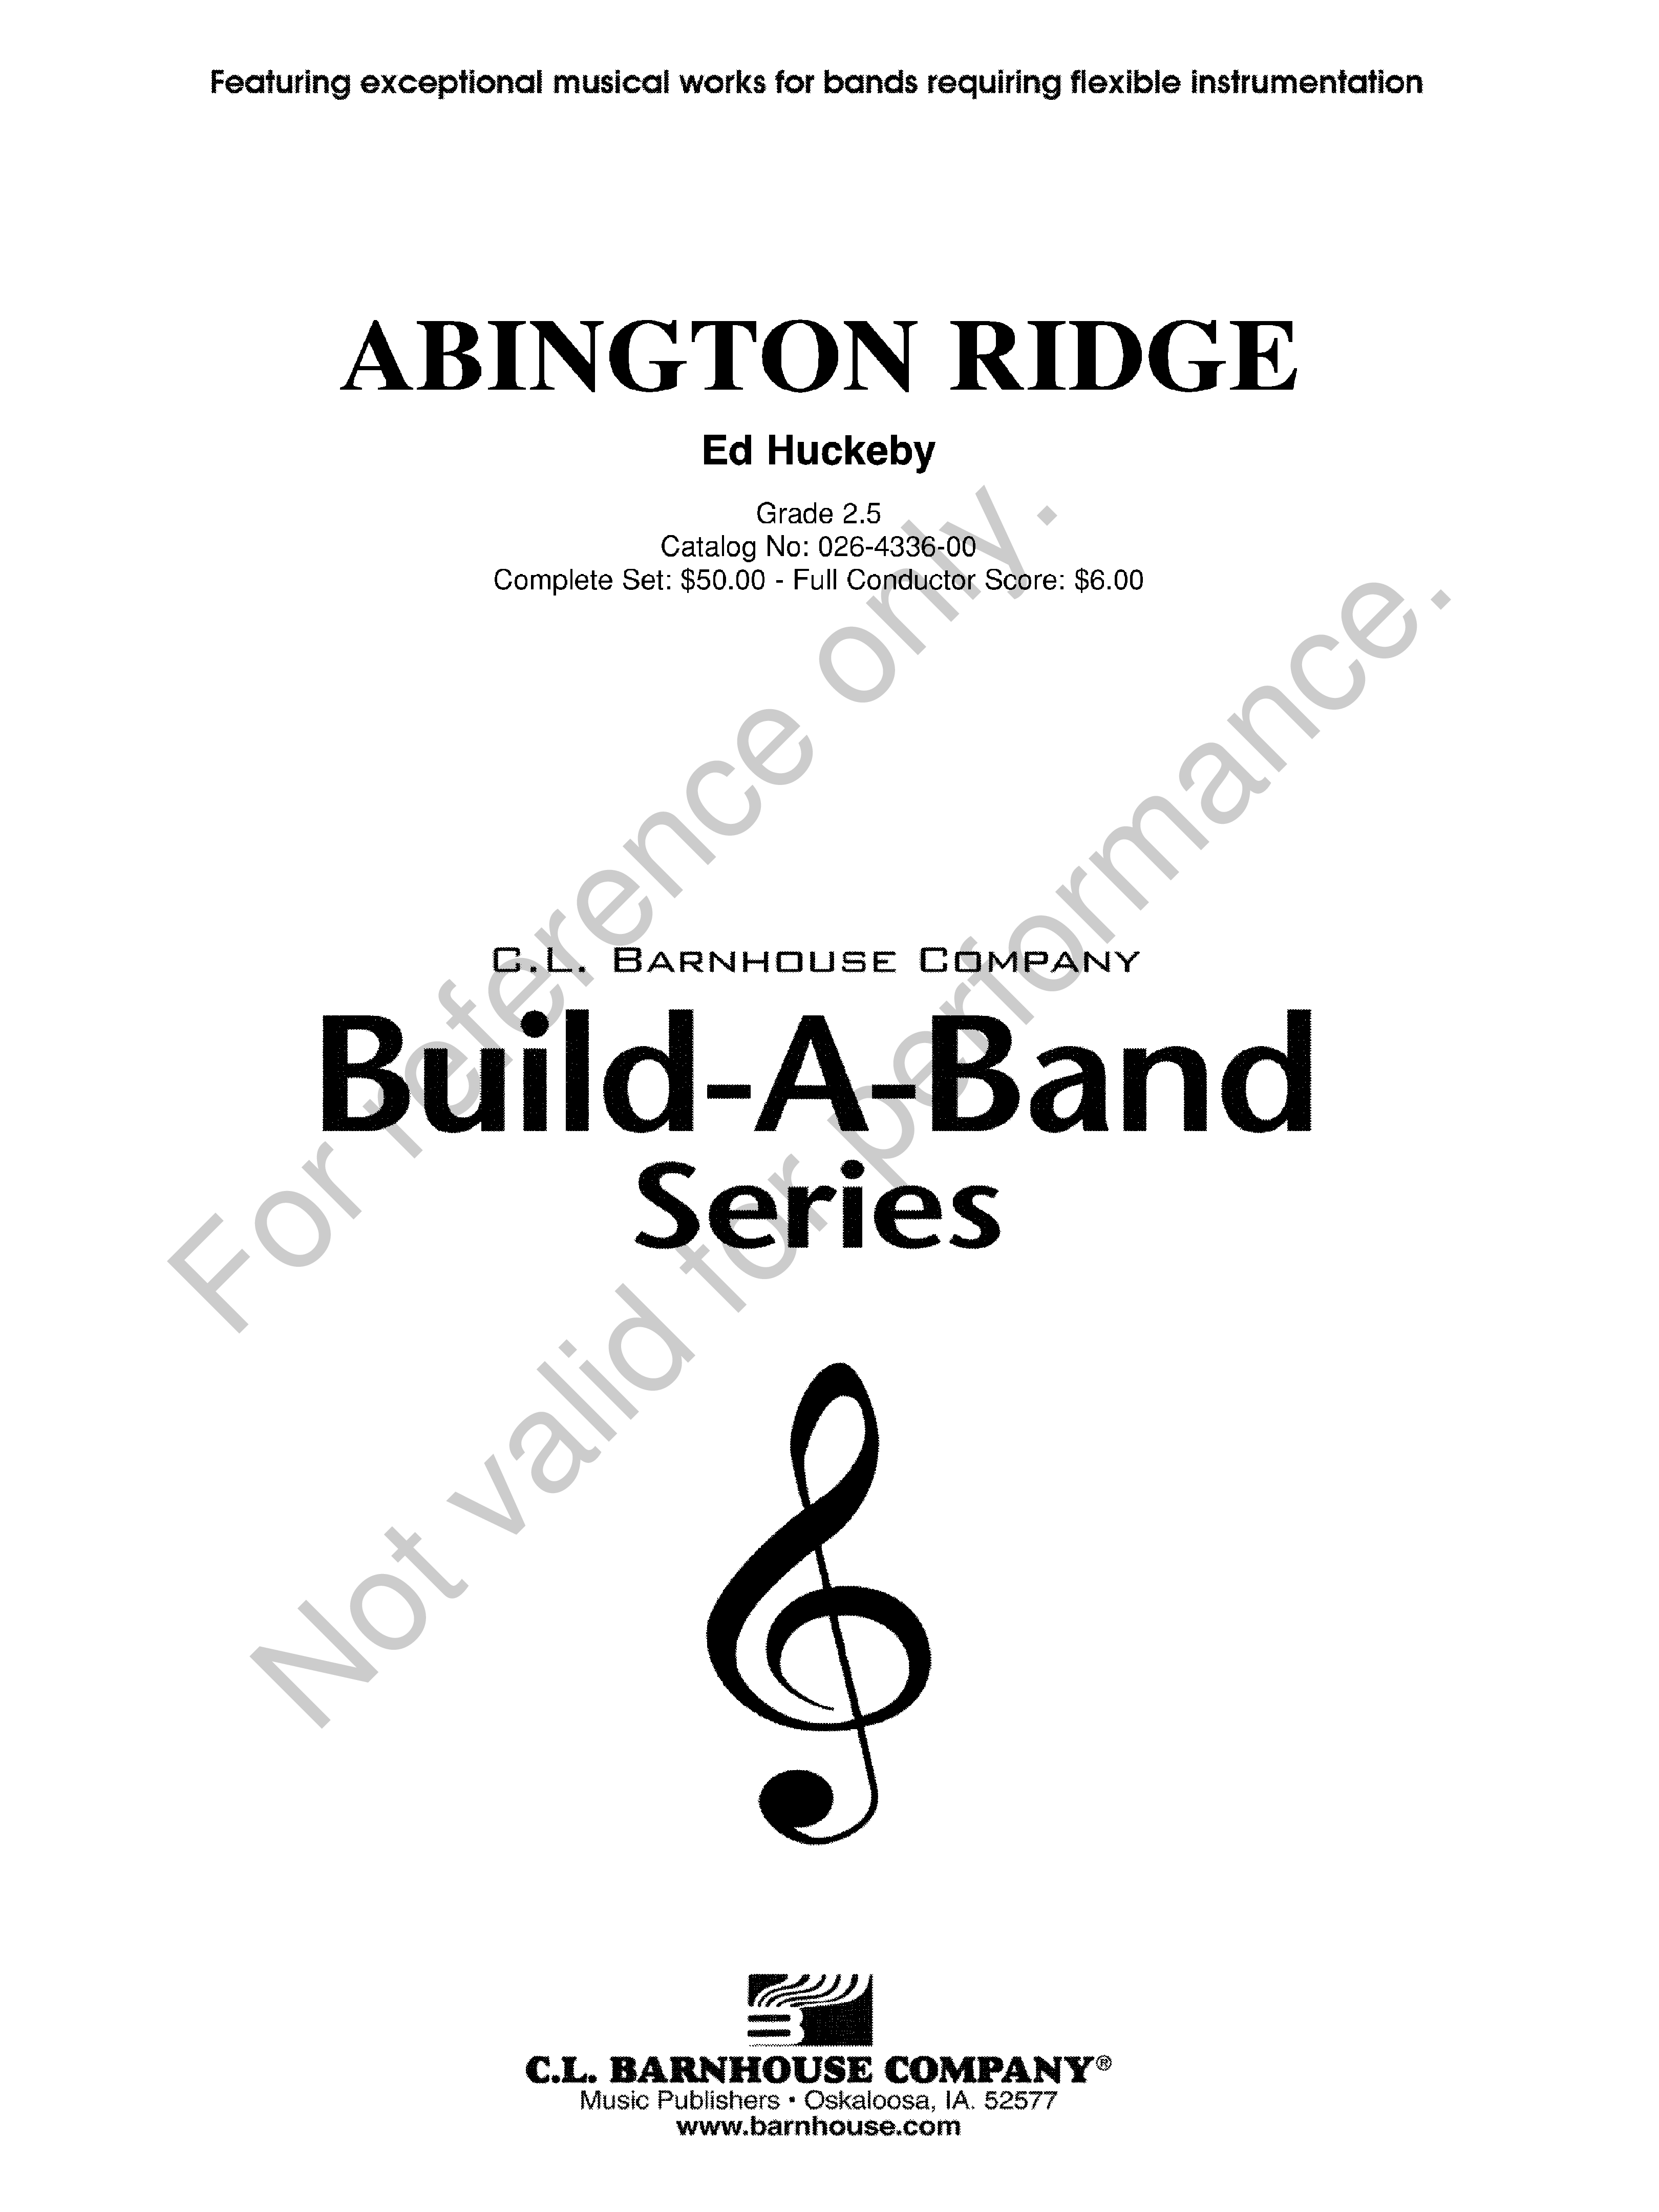 Abington Ridge Build-A-Band